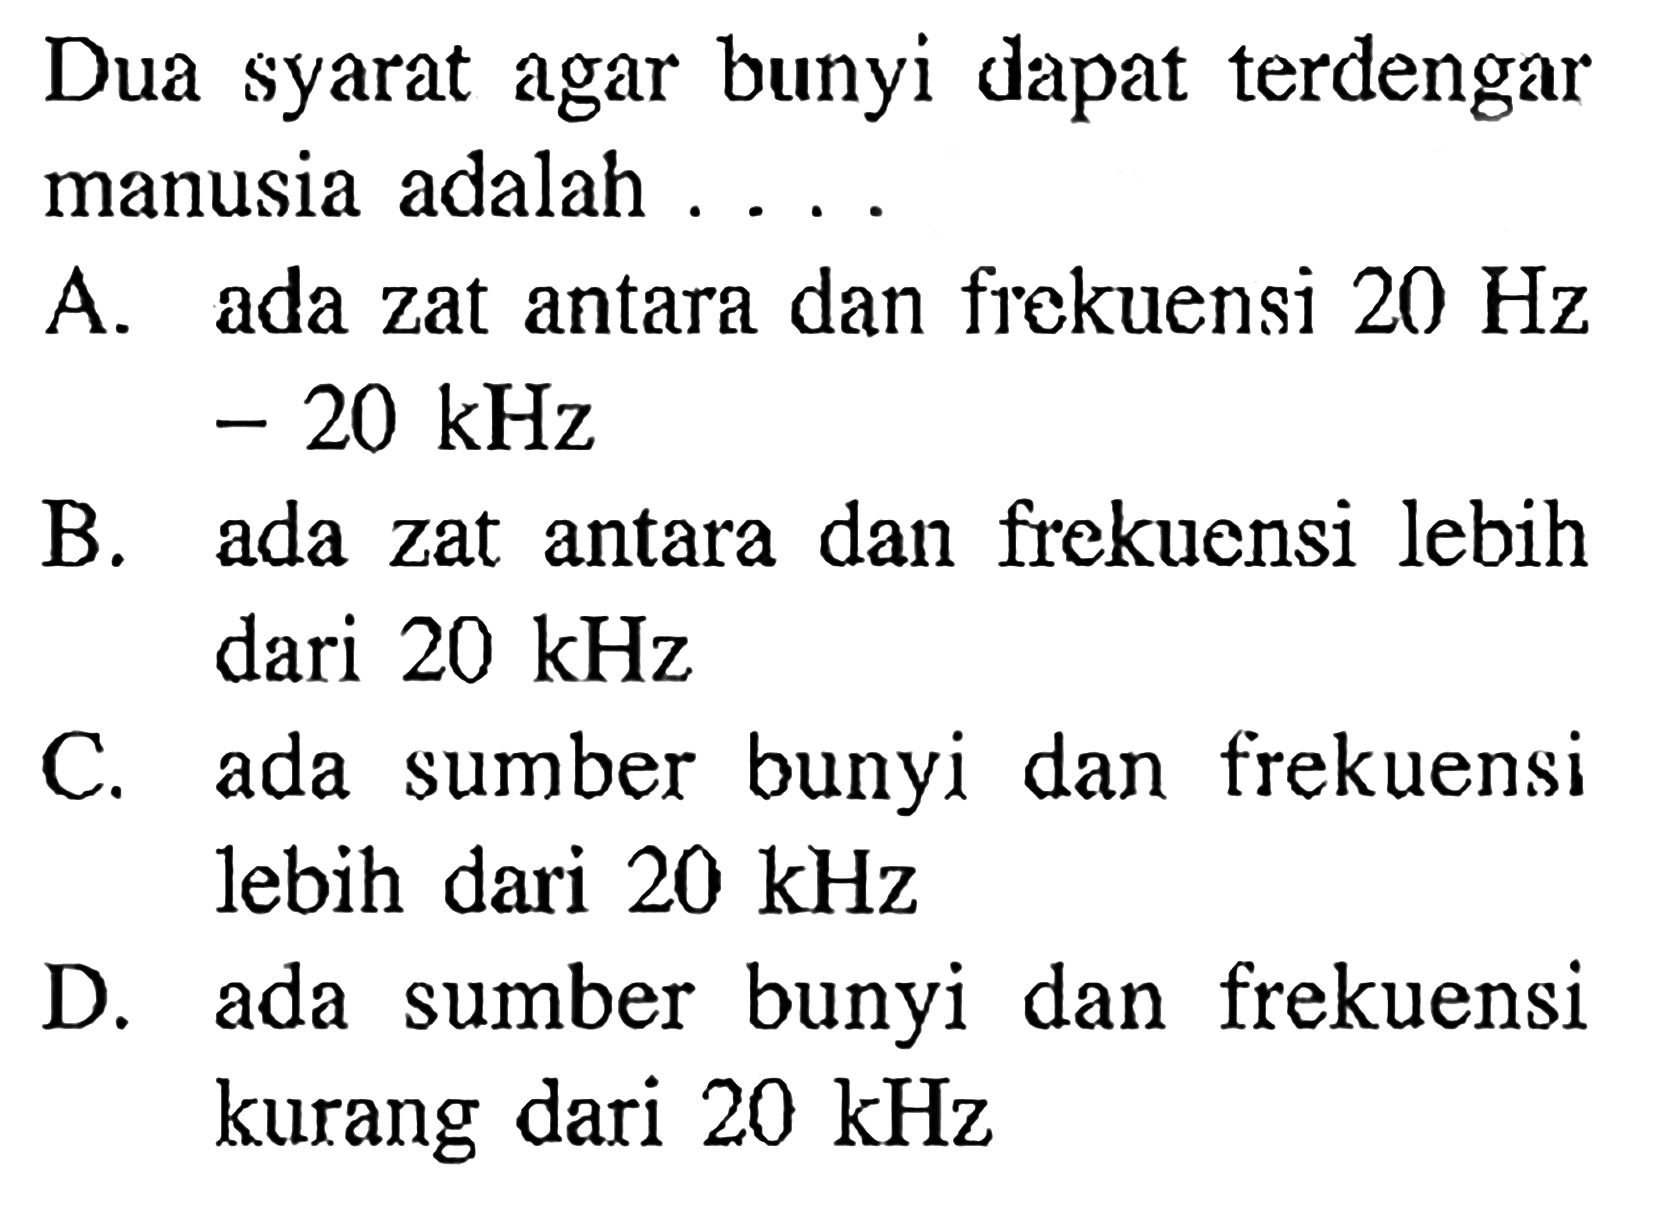 Dua syarat agar bunyi dapat terdengar manusia adalah ....A. ada zat antara dan frekuensi  20 Hz   -20 k H z B. ada zat antara dan frekuensi lebih dari  20 kHz C. ada sumber bunyi dan frekuensi lebih dari  20 kHz D. ada sumber bunyi dan frekuensi kurang dari  20 kHz 